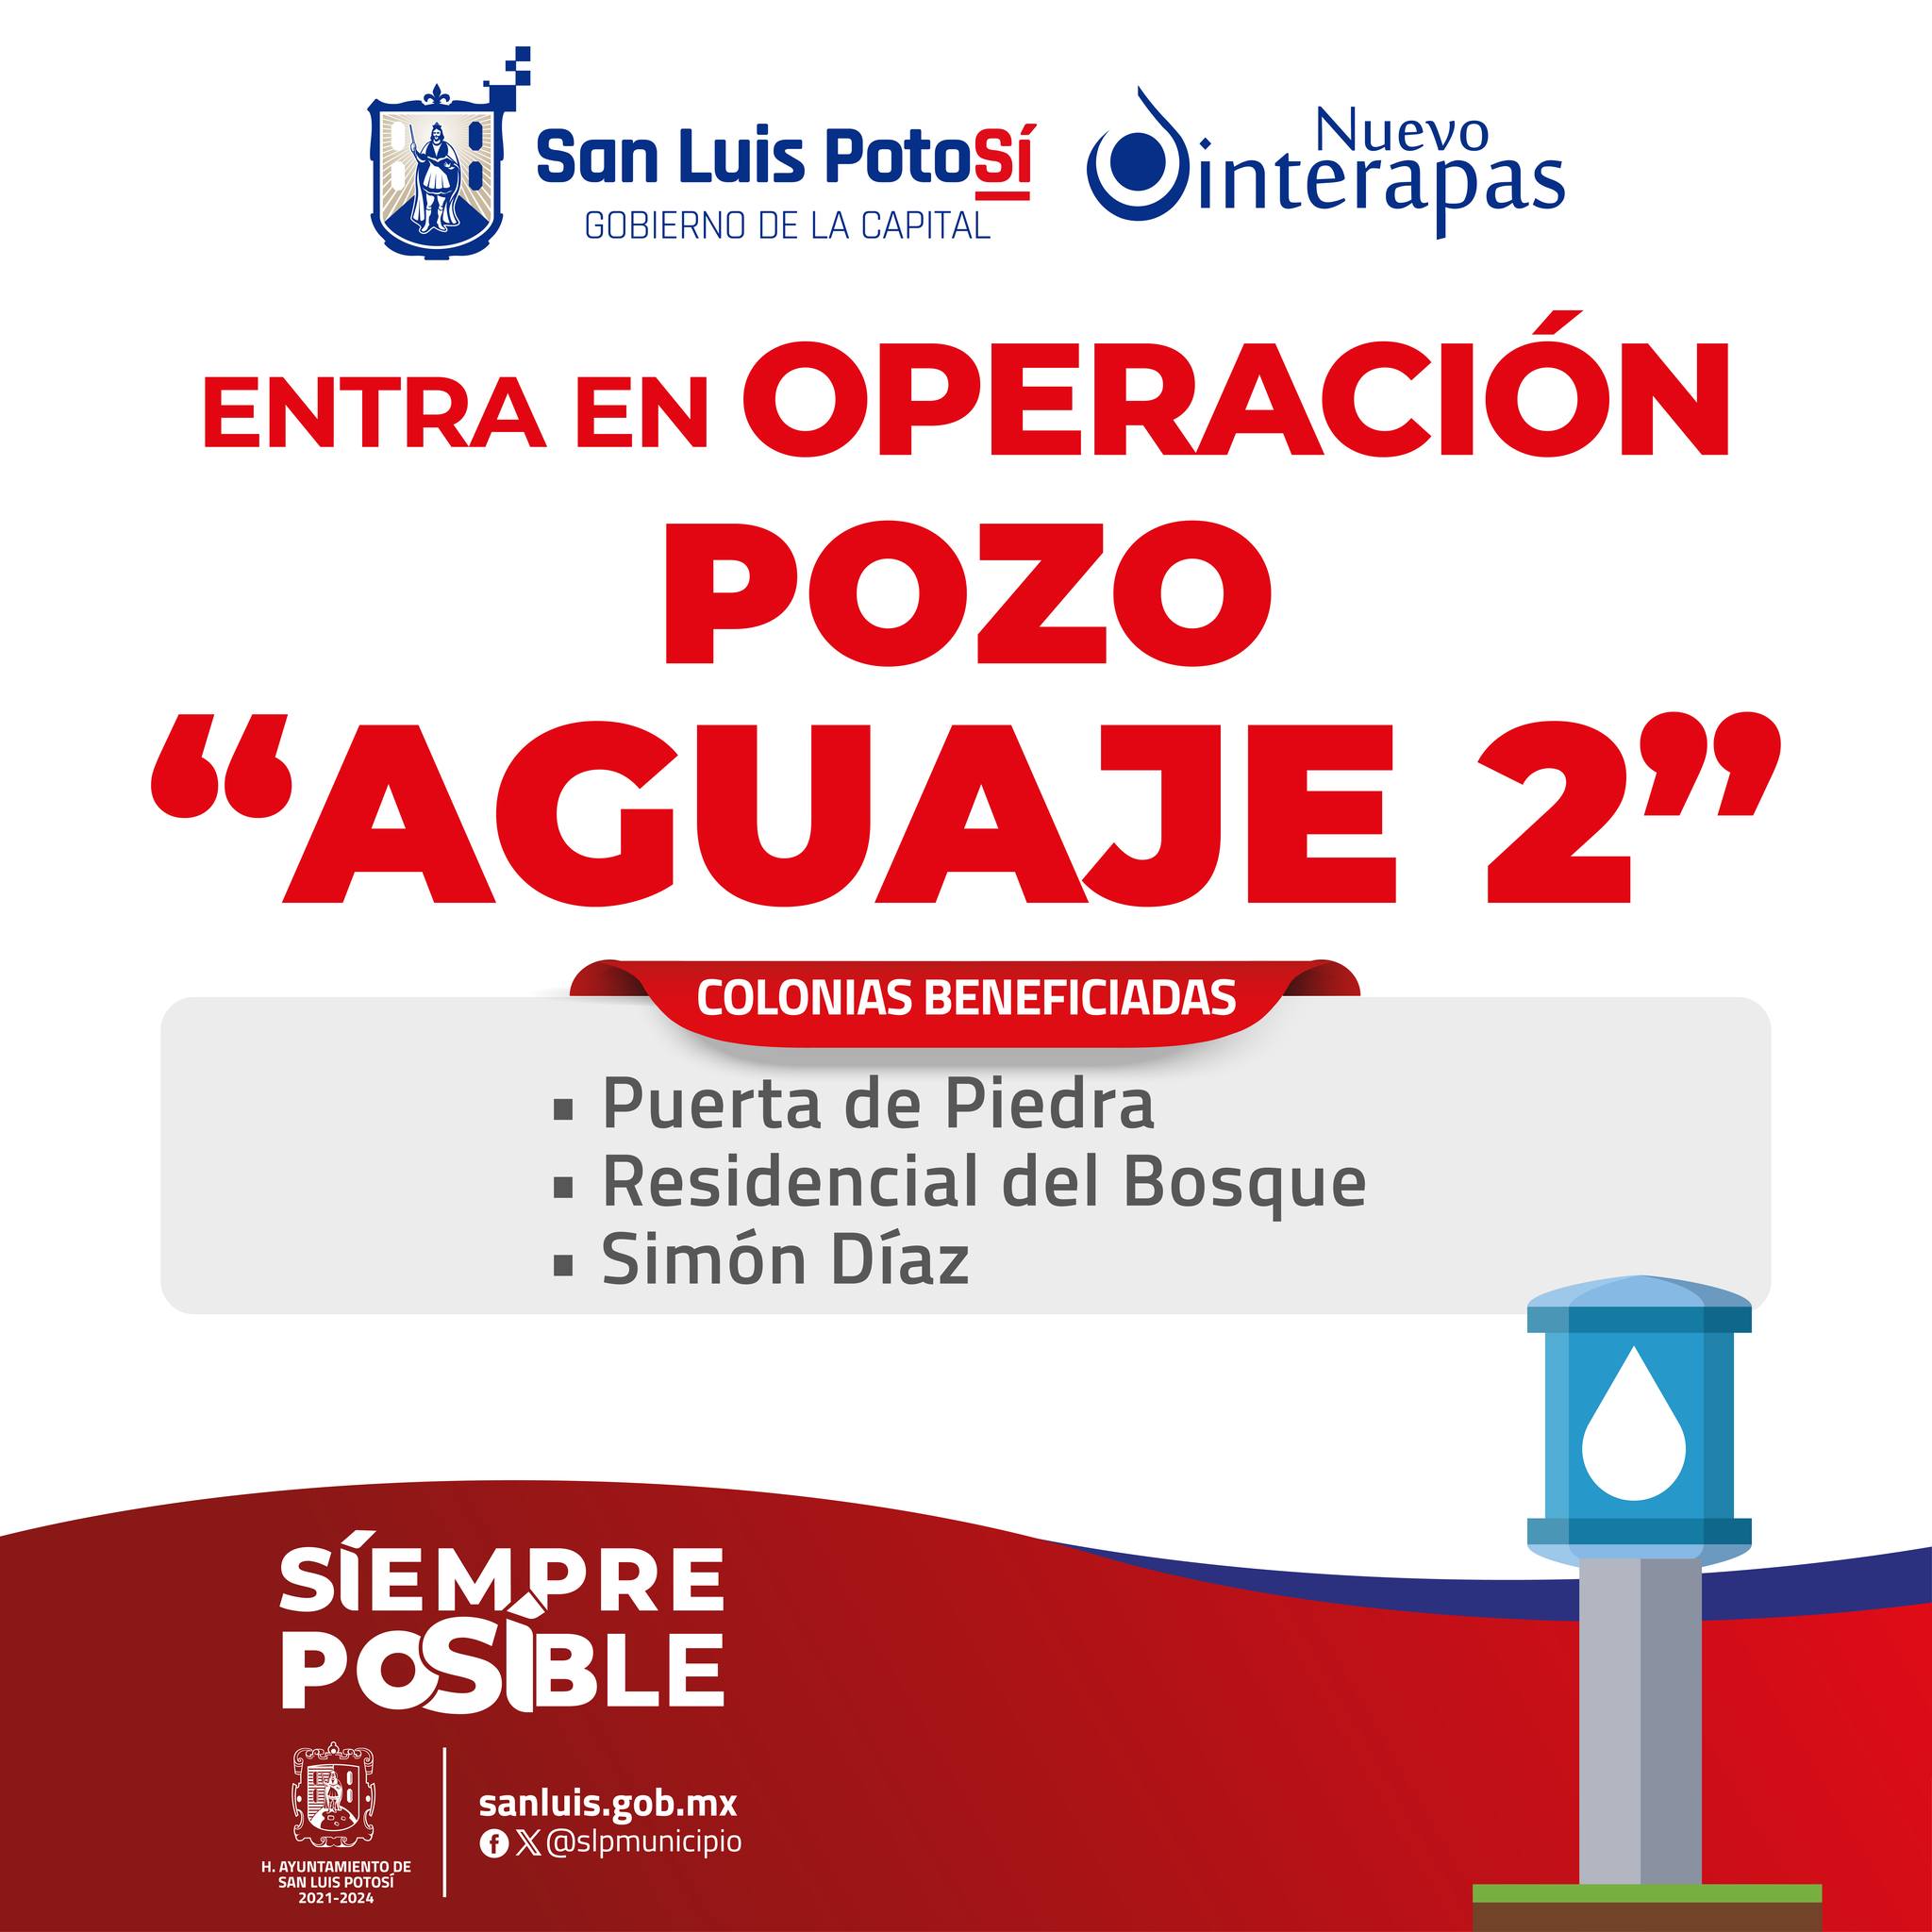 INTERAPAS pone en operación el pozo “Aguaje II” para suministrar agua a colonias al sur poniente de la ciudad.